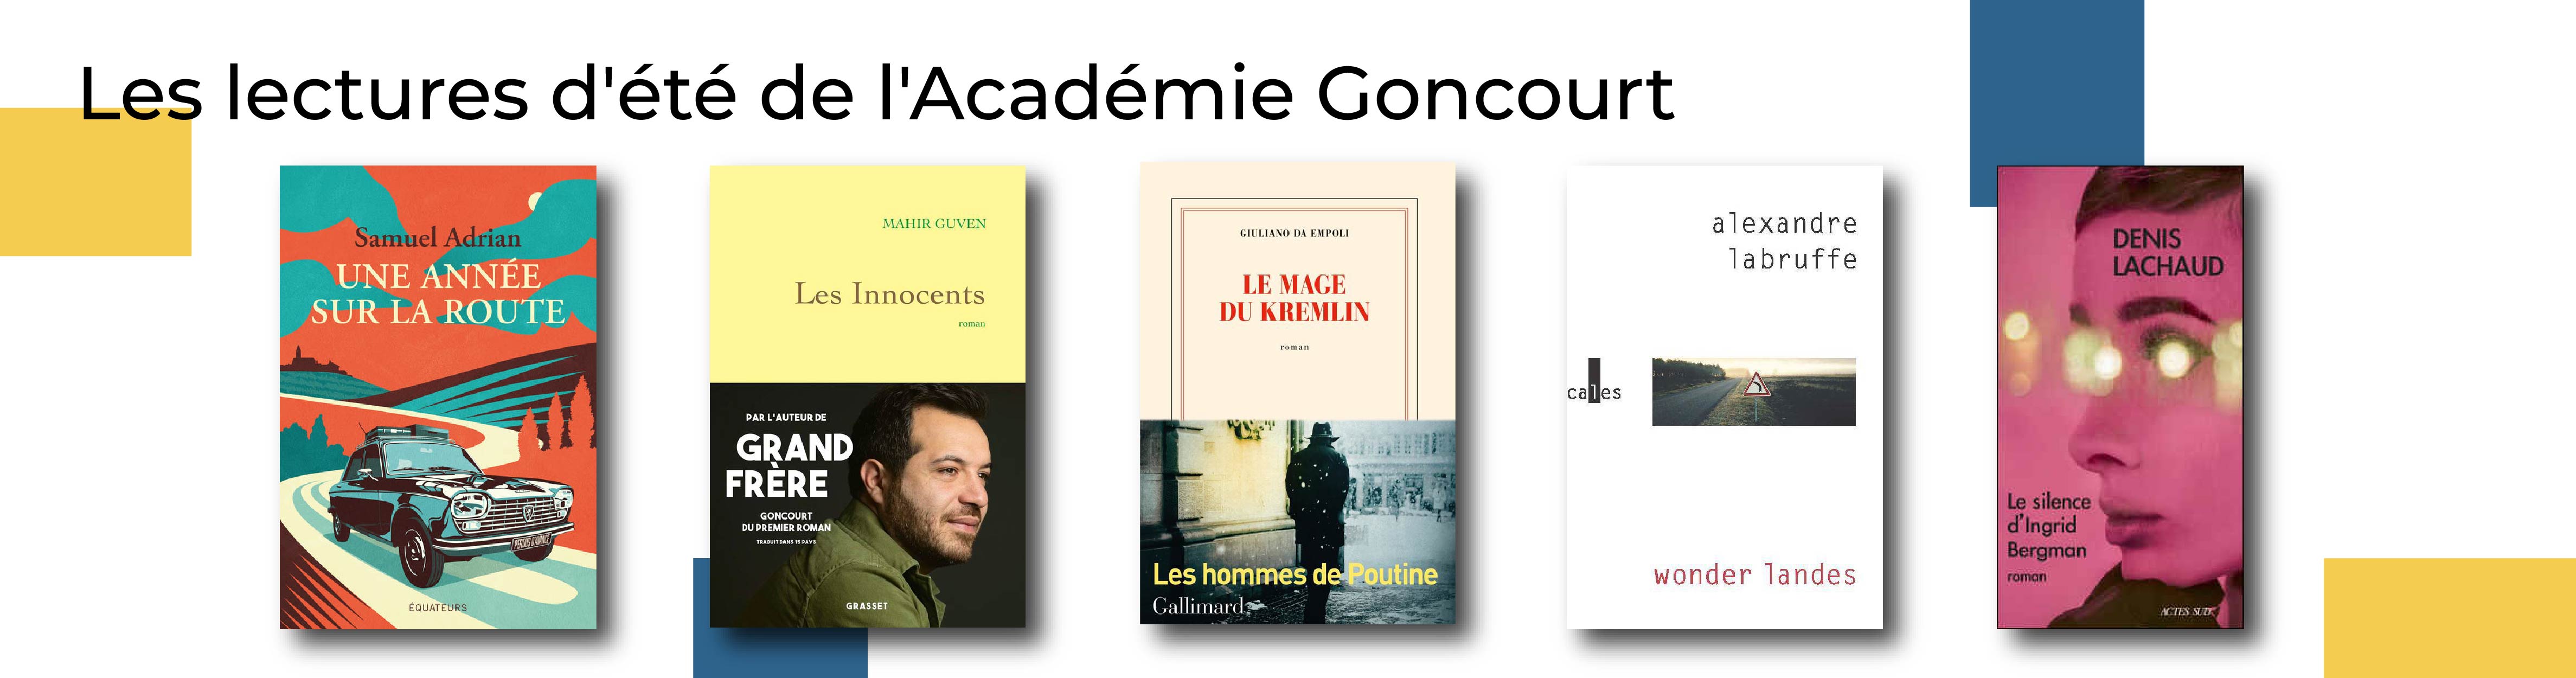 Lectures d'été de l'Académie Goncourt